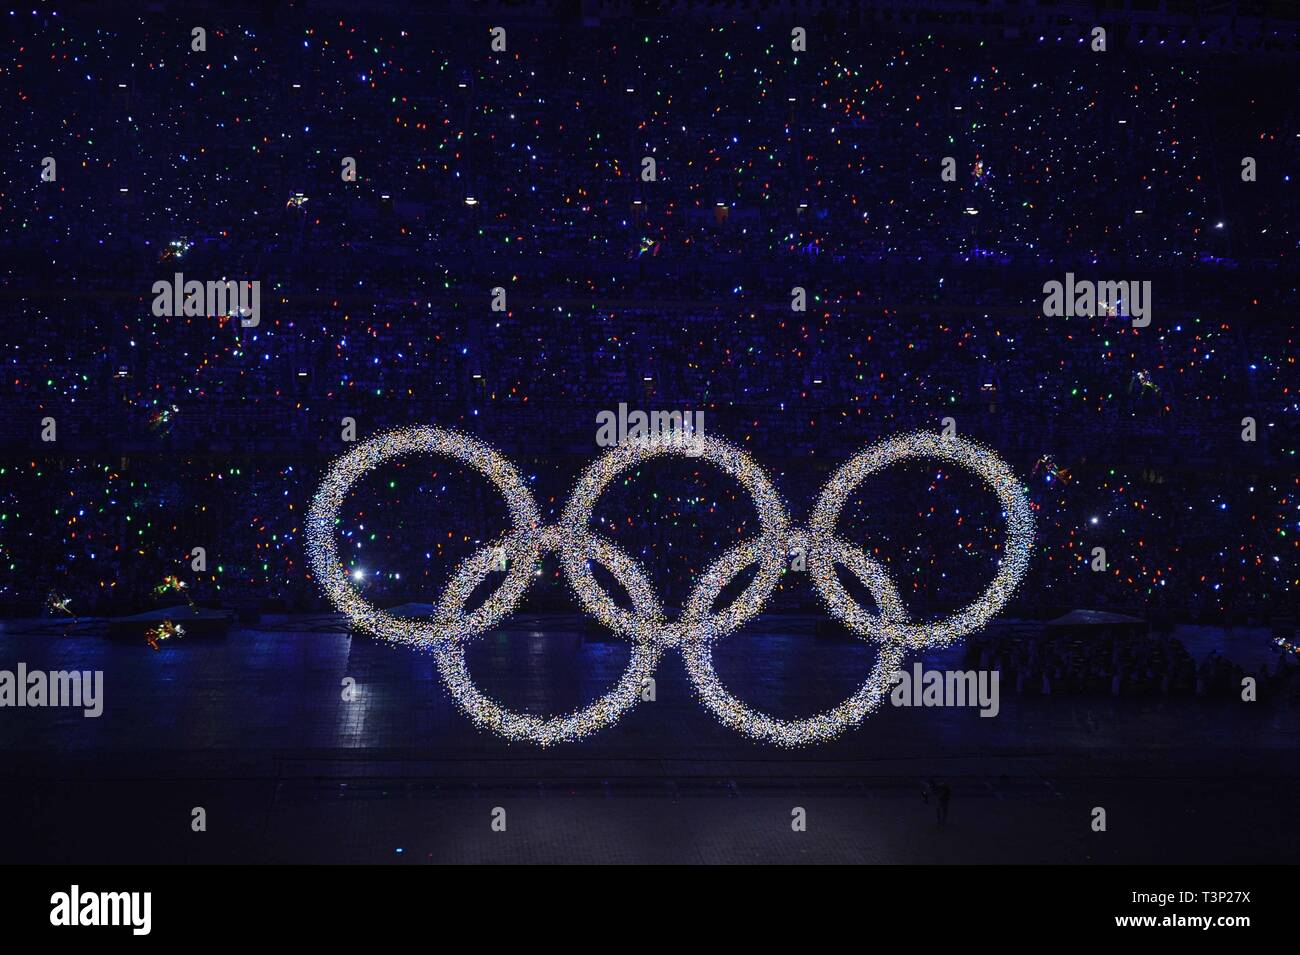 (190411) - Peking, April 11, 2019 (Xinhua) - Foto auf Aug 8, 2008 zeigt das glänzende Olympische Ringe auf einem großen LED-Bildschirm, verkünden die Ankunft der Olympiade, bei der Eröffnungsfeier der Olympischen Spiele 2008 in Peking im Nationalstadion oder das Bird's Nest, Peking, der Hauptstadt von China. Senden von Athleten, die Olympischen Spiele in Helsinki zum ersten Mal im Jahr 1952 zu dem Zuschlag 2022 Winter-olympischen Spiele im Jahr 2015 zu bewirten, der Volksrepublik China ging durch eine bemerkenswerte Geschichte des Sports, einschließlich erfolgreich das Hosting der Olympische Sommerspiele 2008 und Vorbereitung Stockfoto